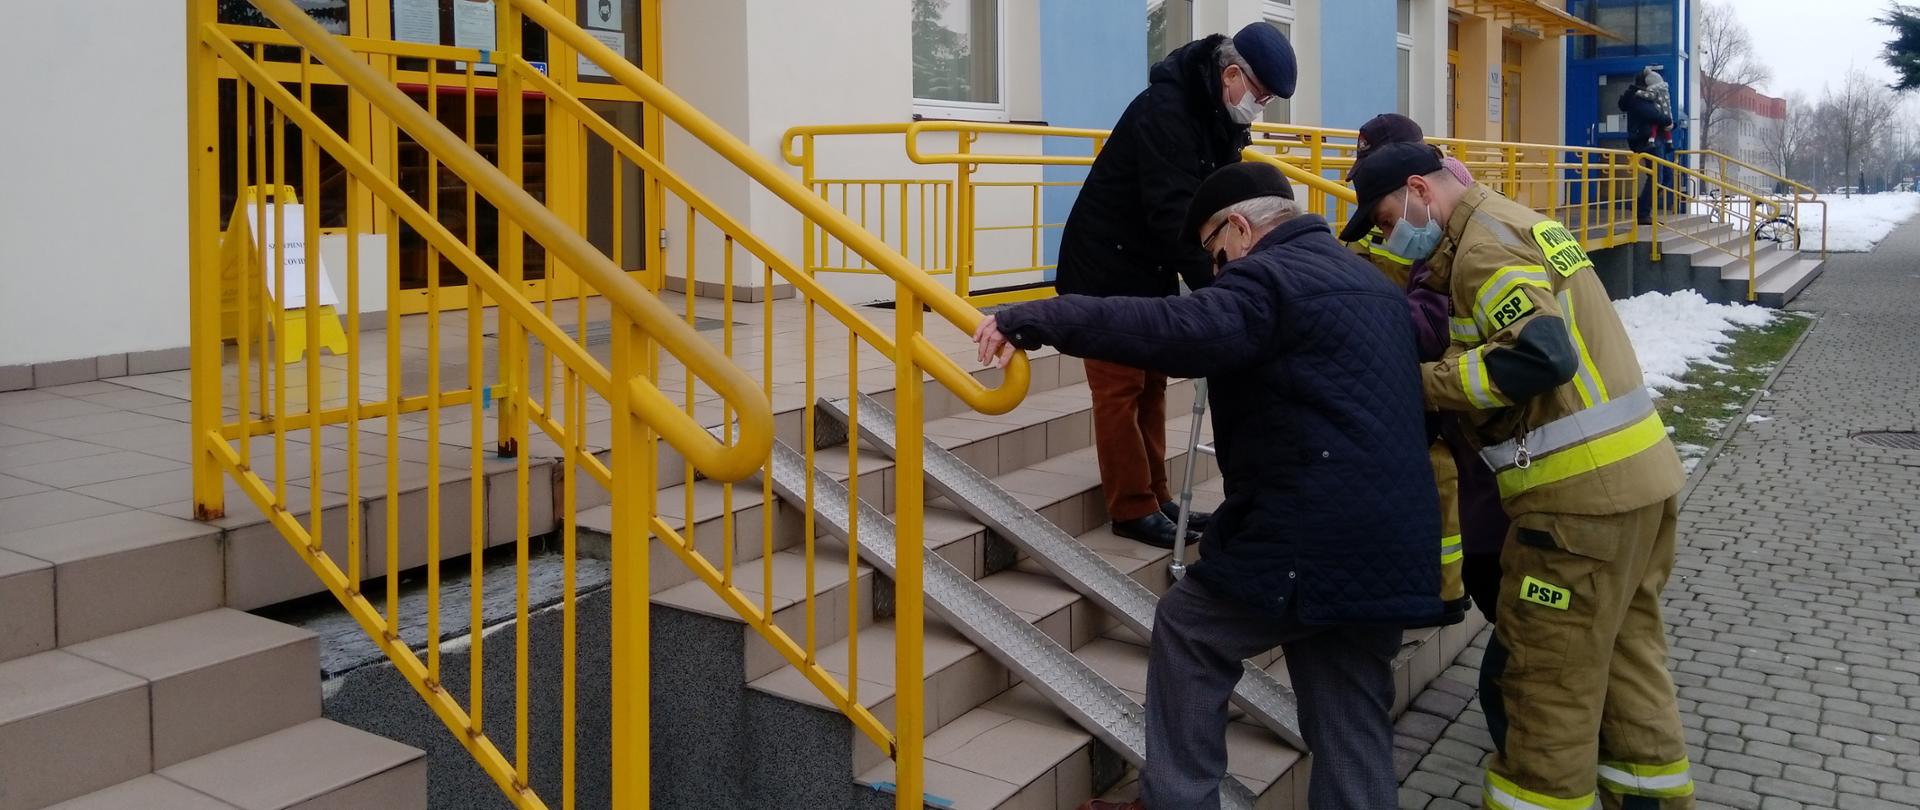 Osoby w podeszłym wieku przy pomocy strażaków wchodzą po schodach do przychodni lekarskiej. W tle kolorowa elewacja budynku.